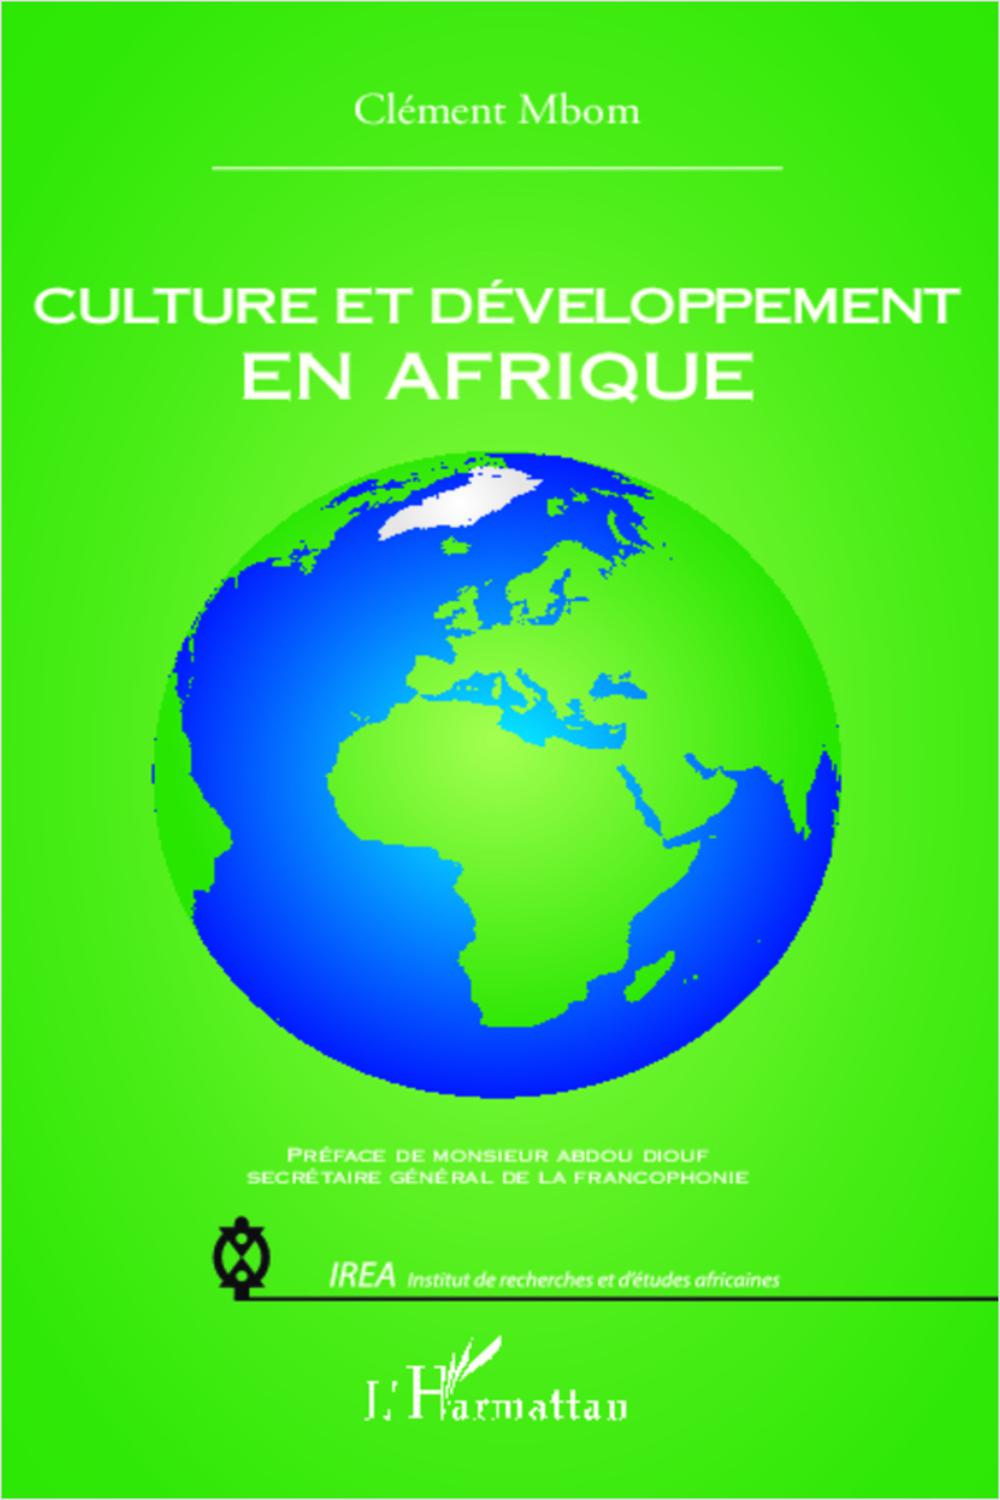 Culture et développement en Afrique - Clément Mbom